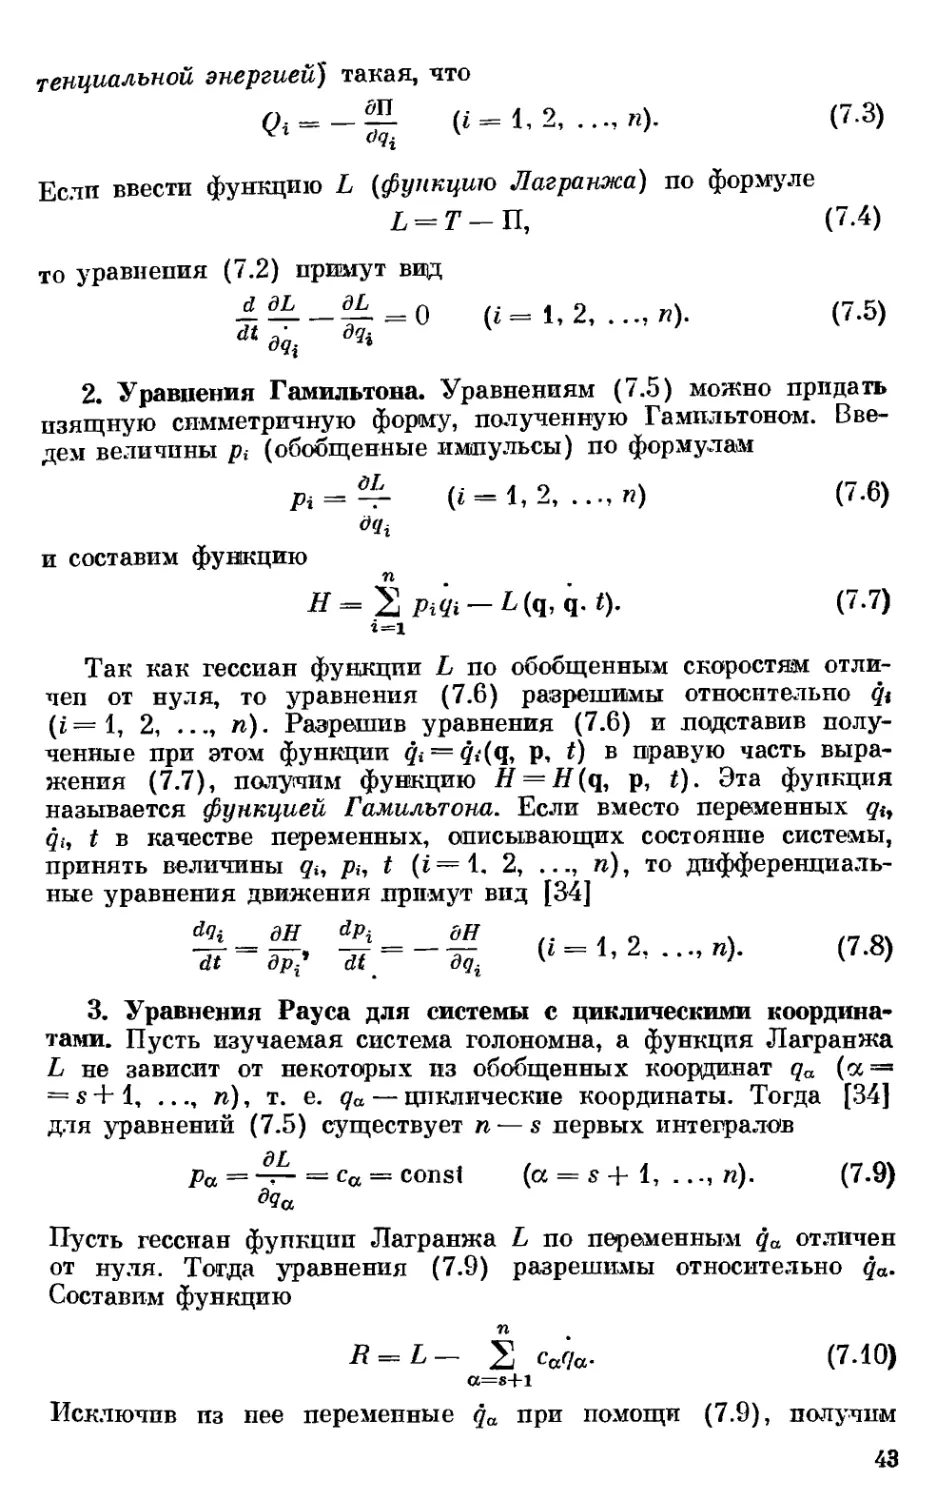 2. Уравнения Гамильтона
3. Уравнения Рауса для системы с циклическими координатами